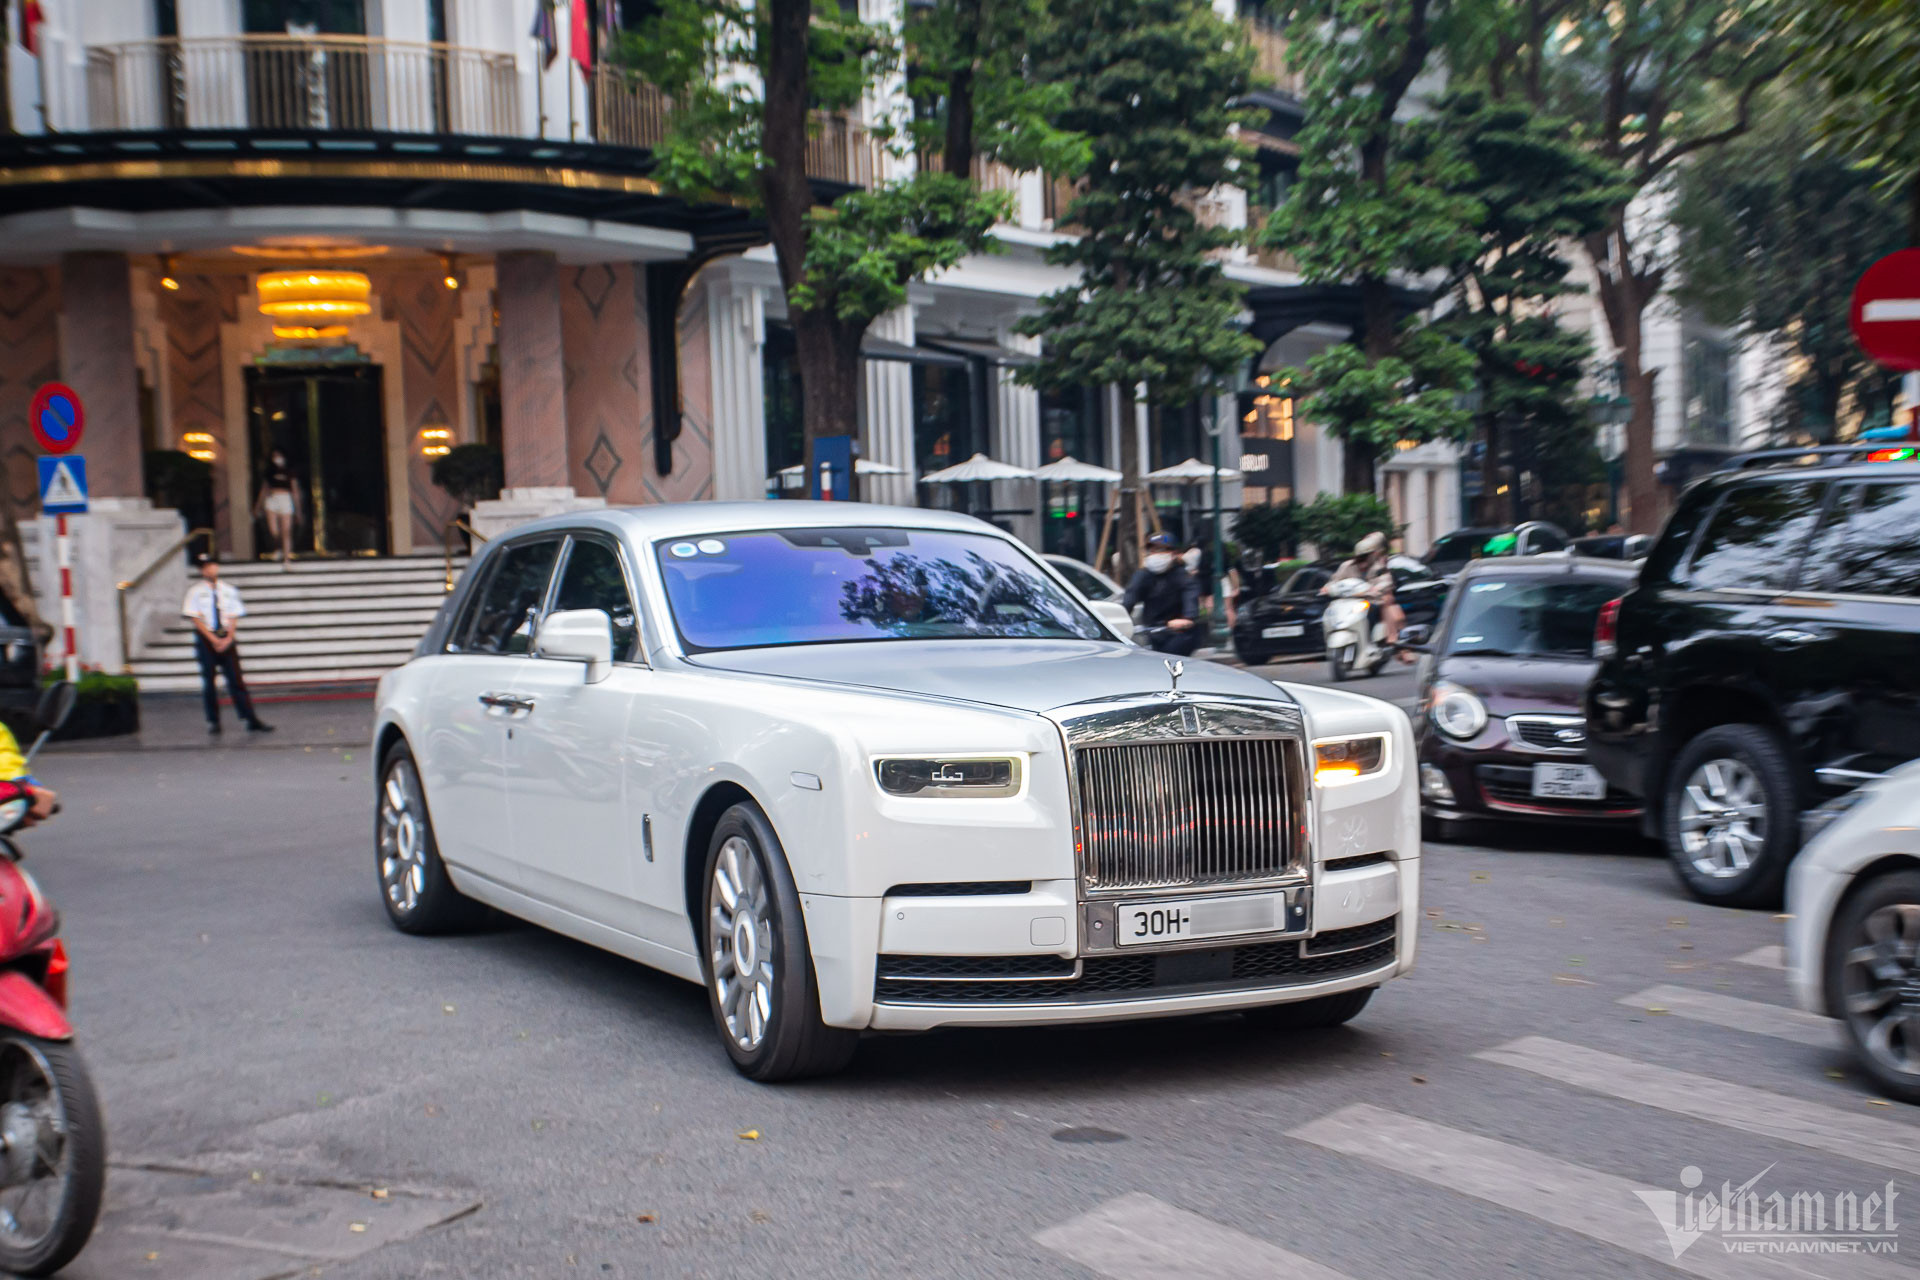 Bắt gặp Rolls-Royce Phantom VIII giá trên 50 tỷ đồng của đại gia Sài thành